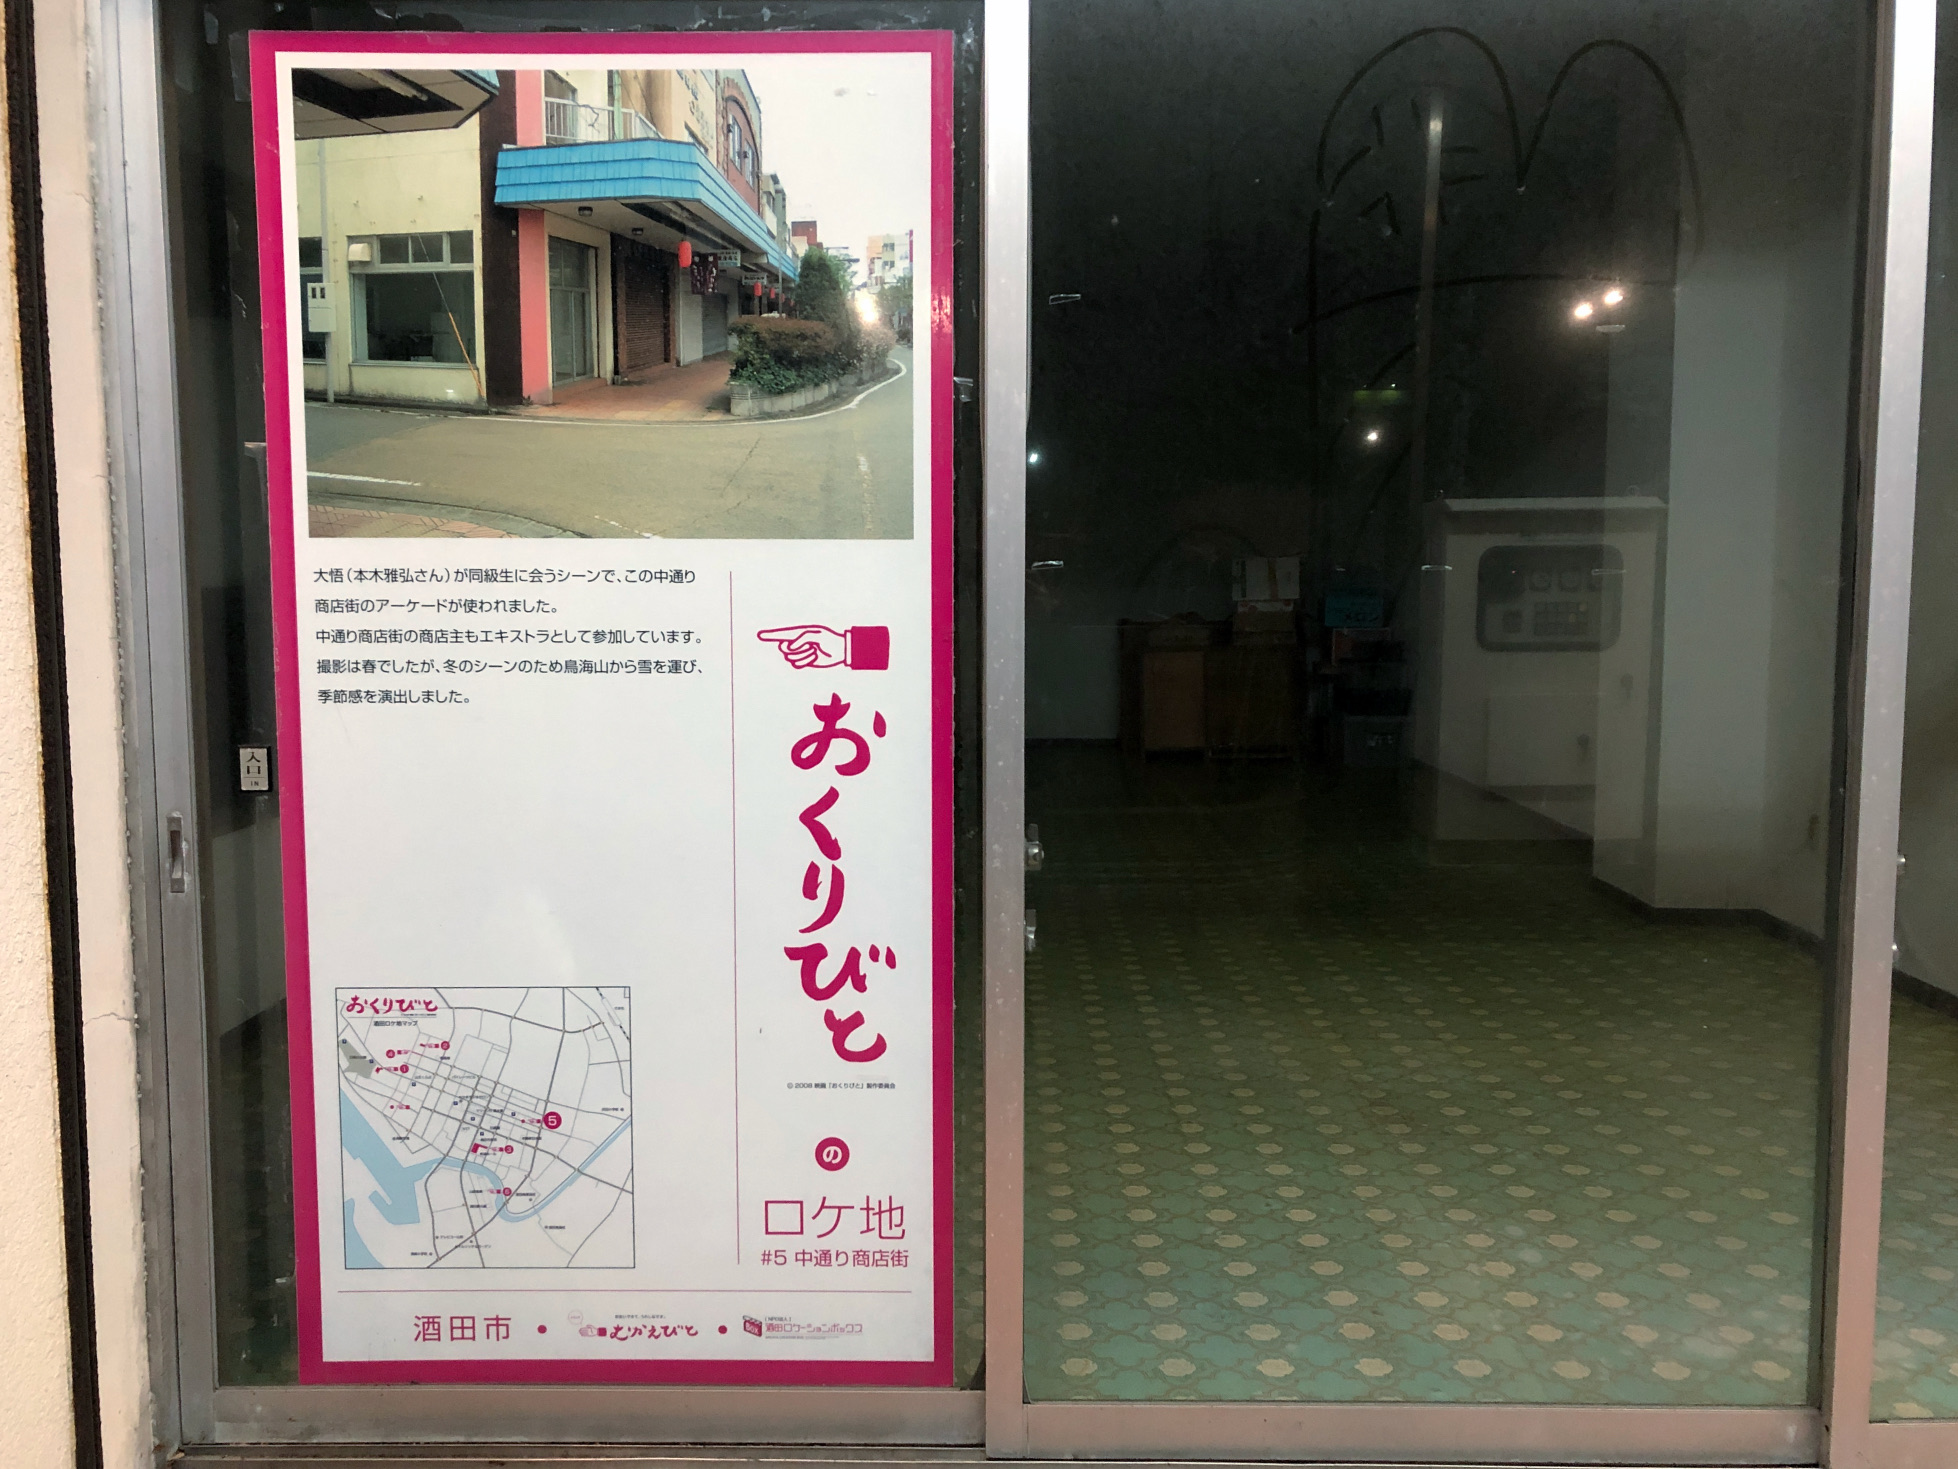 In der ganzen Stadt findet man Schilder, die auf die Drehorte des Films «Okuribito» hinweisen.